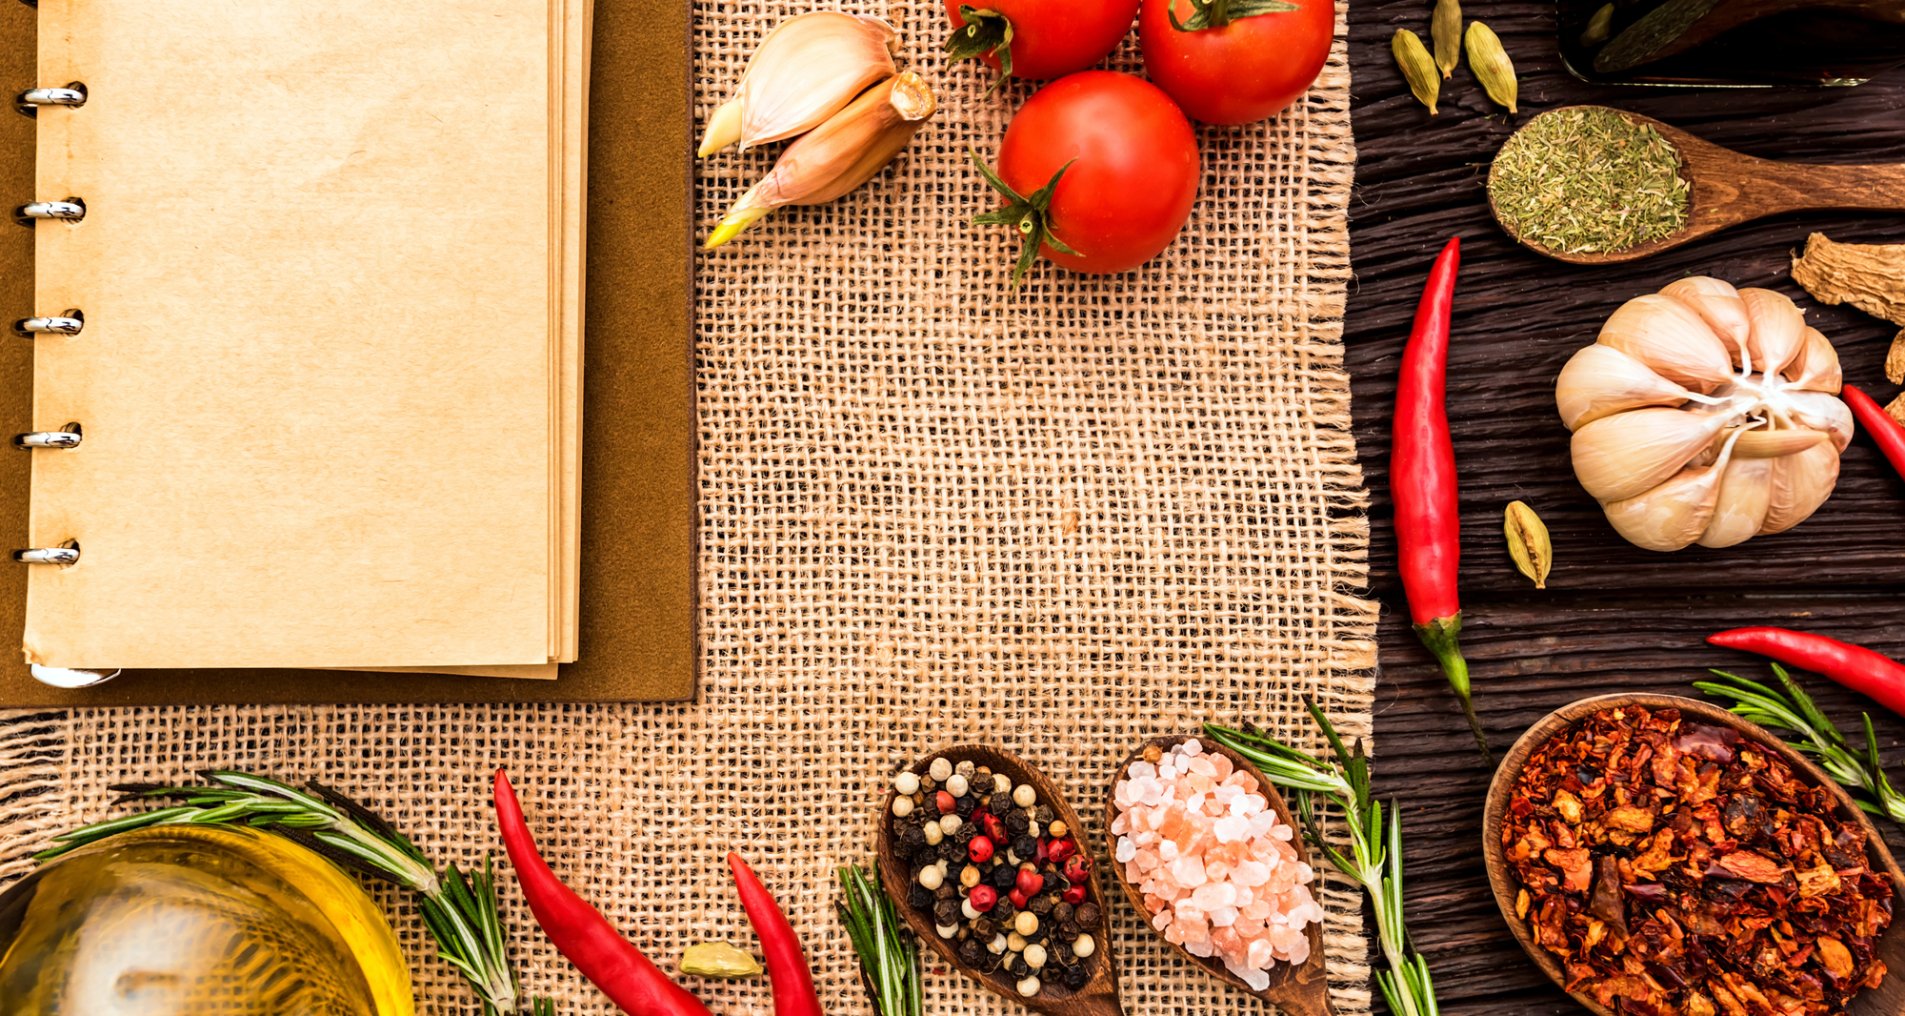 овощи, специи, кулинарная книга на столе